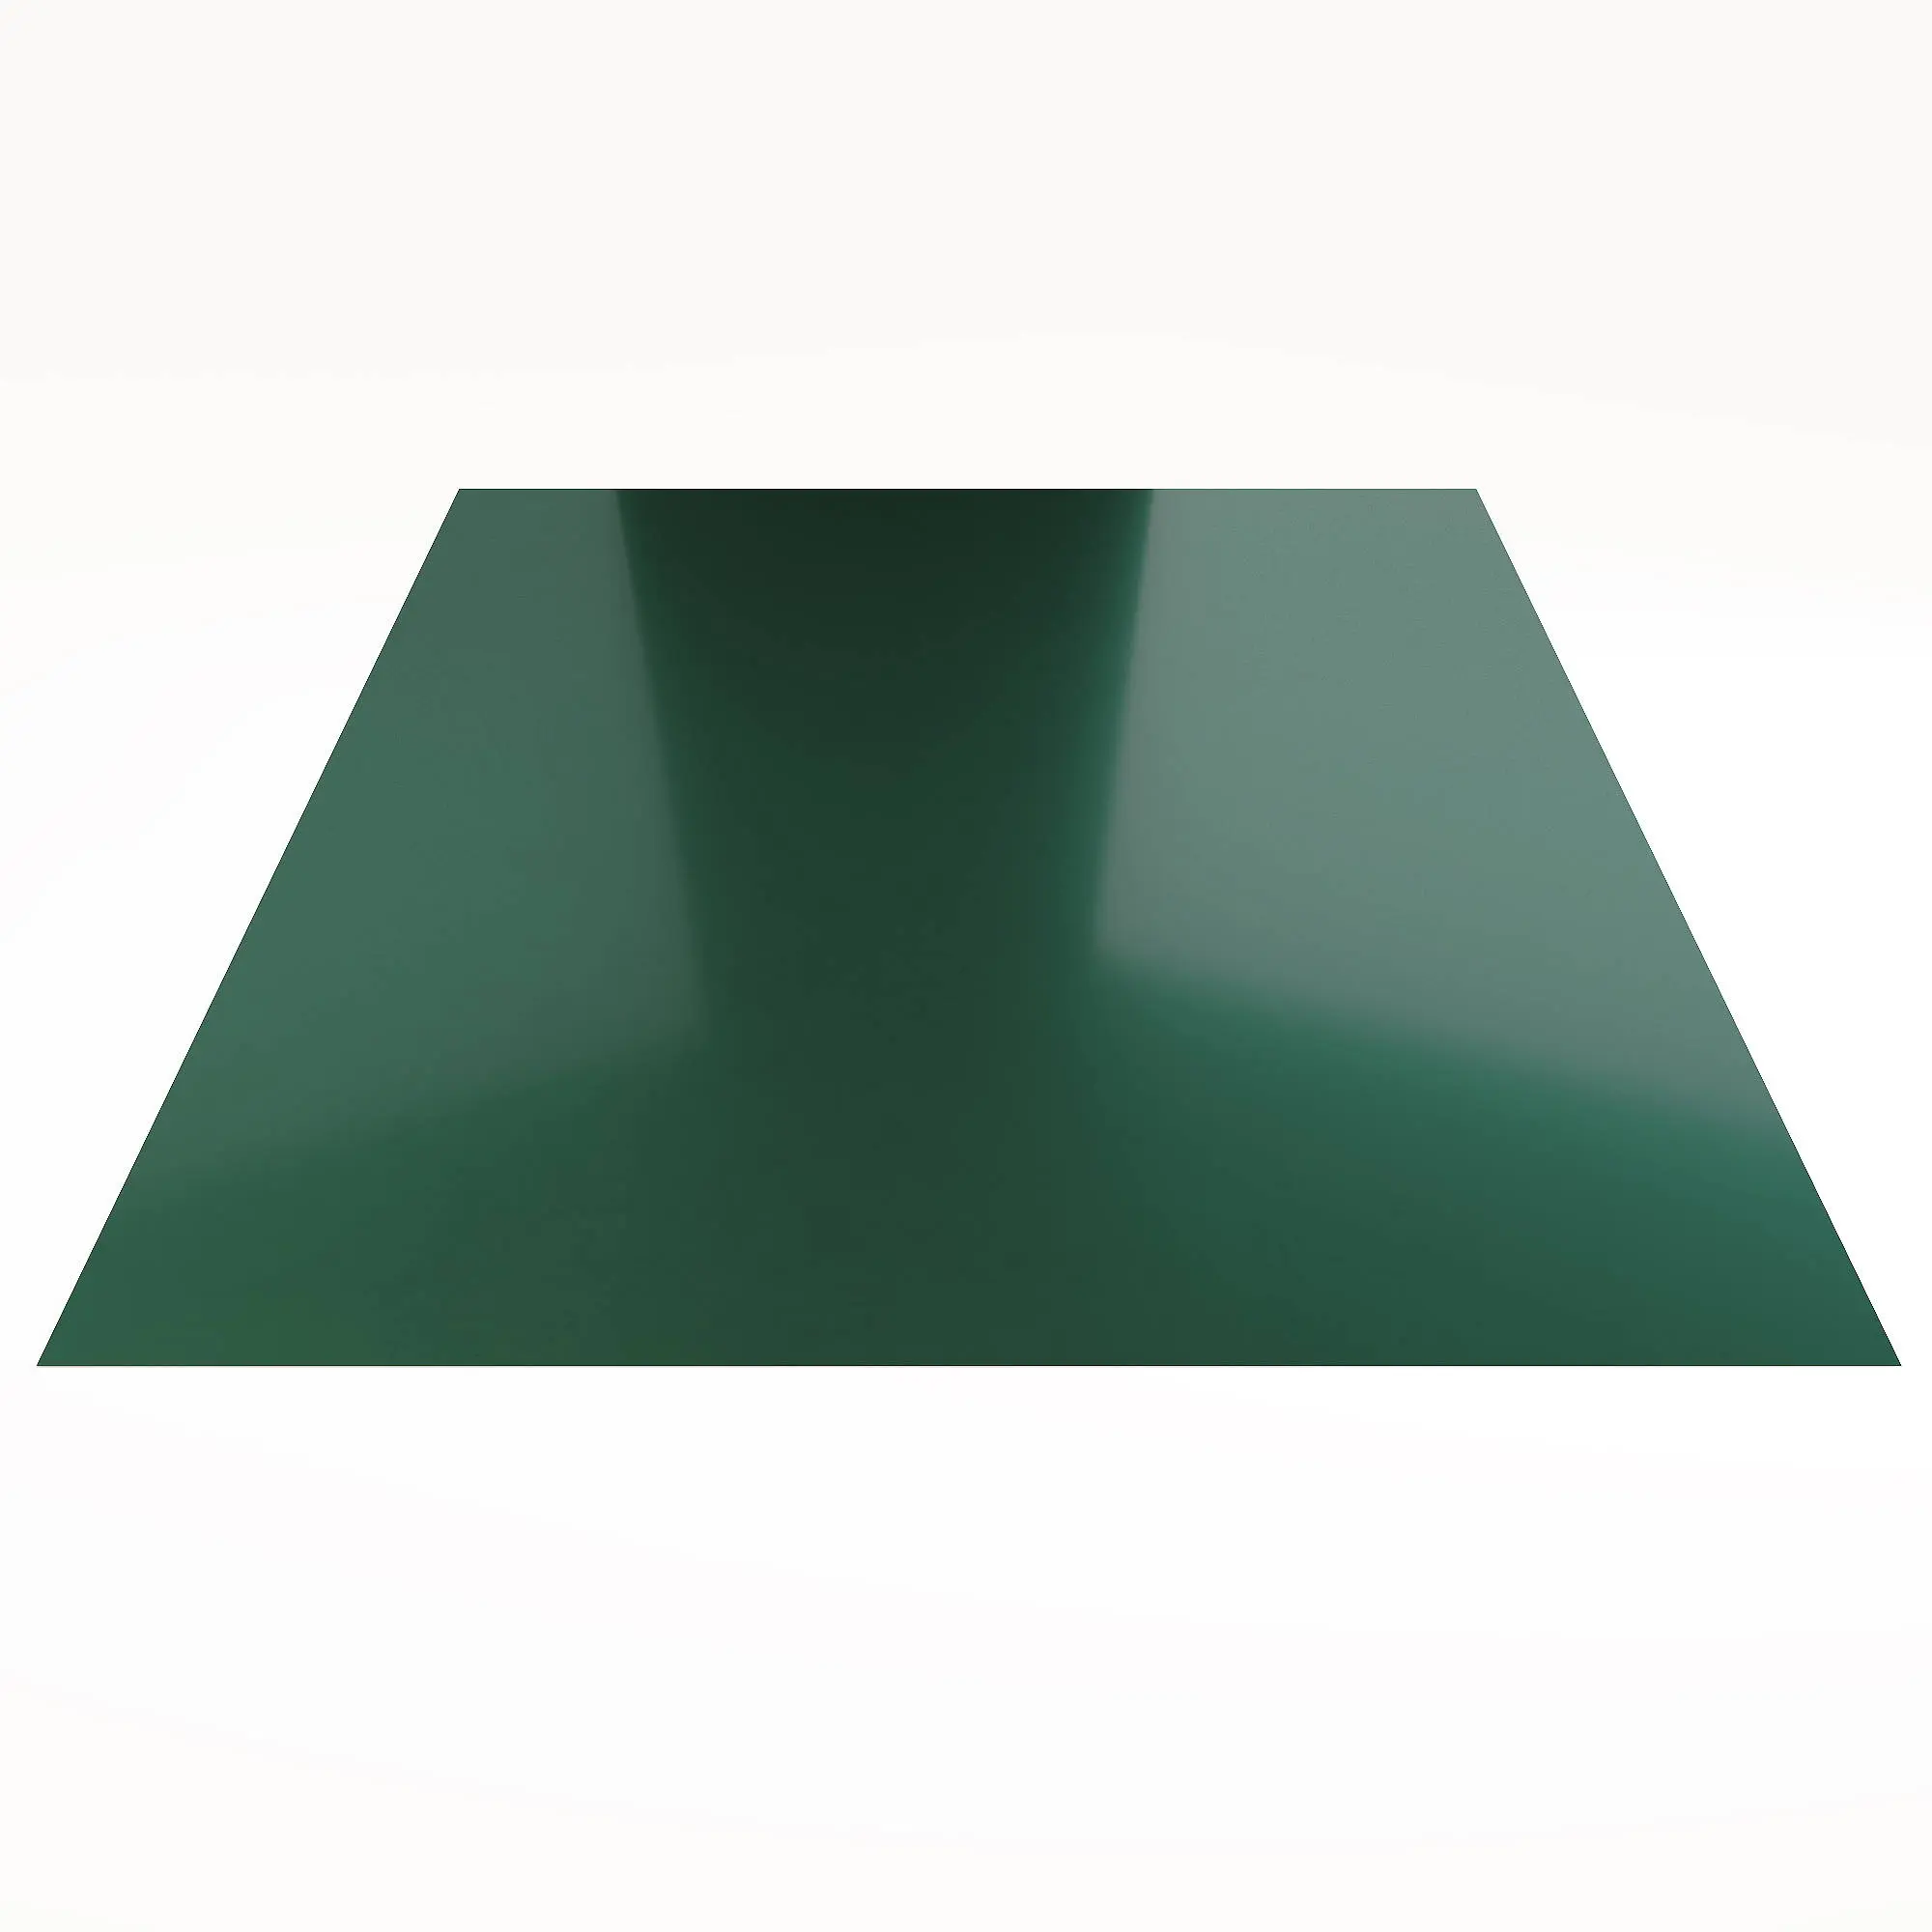 Гладкий лист Стальной шёлк RAL 6005 (Зелёный мох) 2500*1250*0,5 односторонний ламинированный